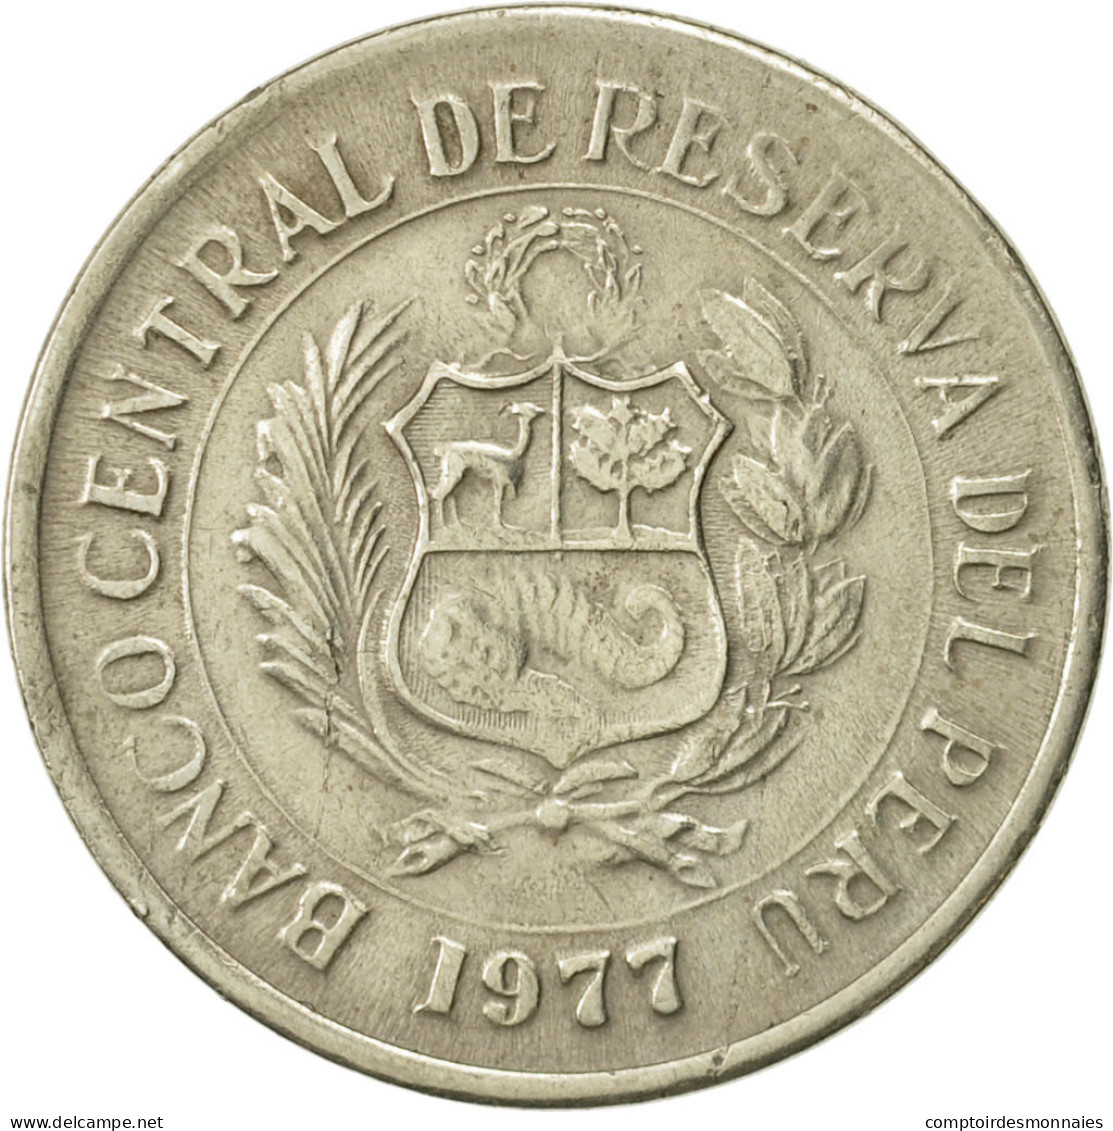 Monnaie, Pérou, 5 Soles, 1977, TTB, Copper-nickel, KM:267 - Perú